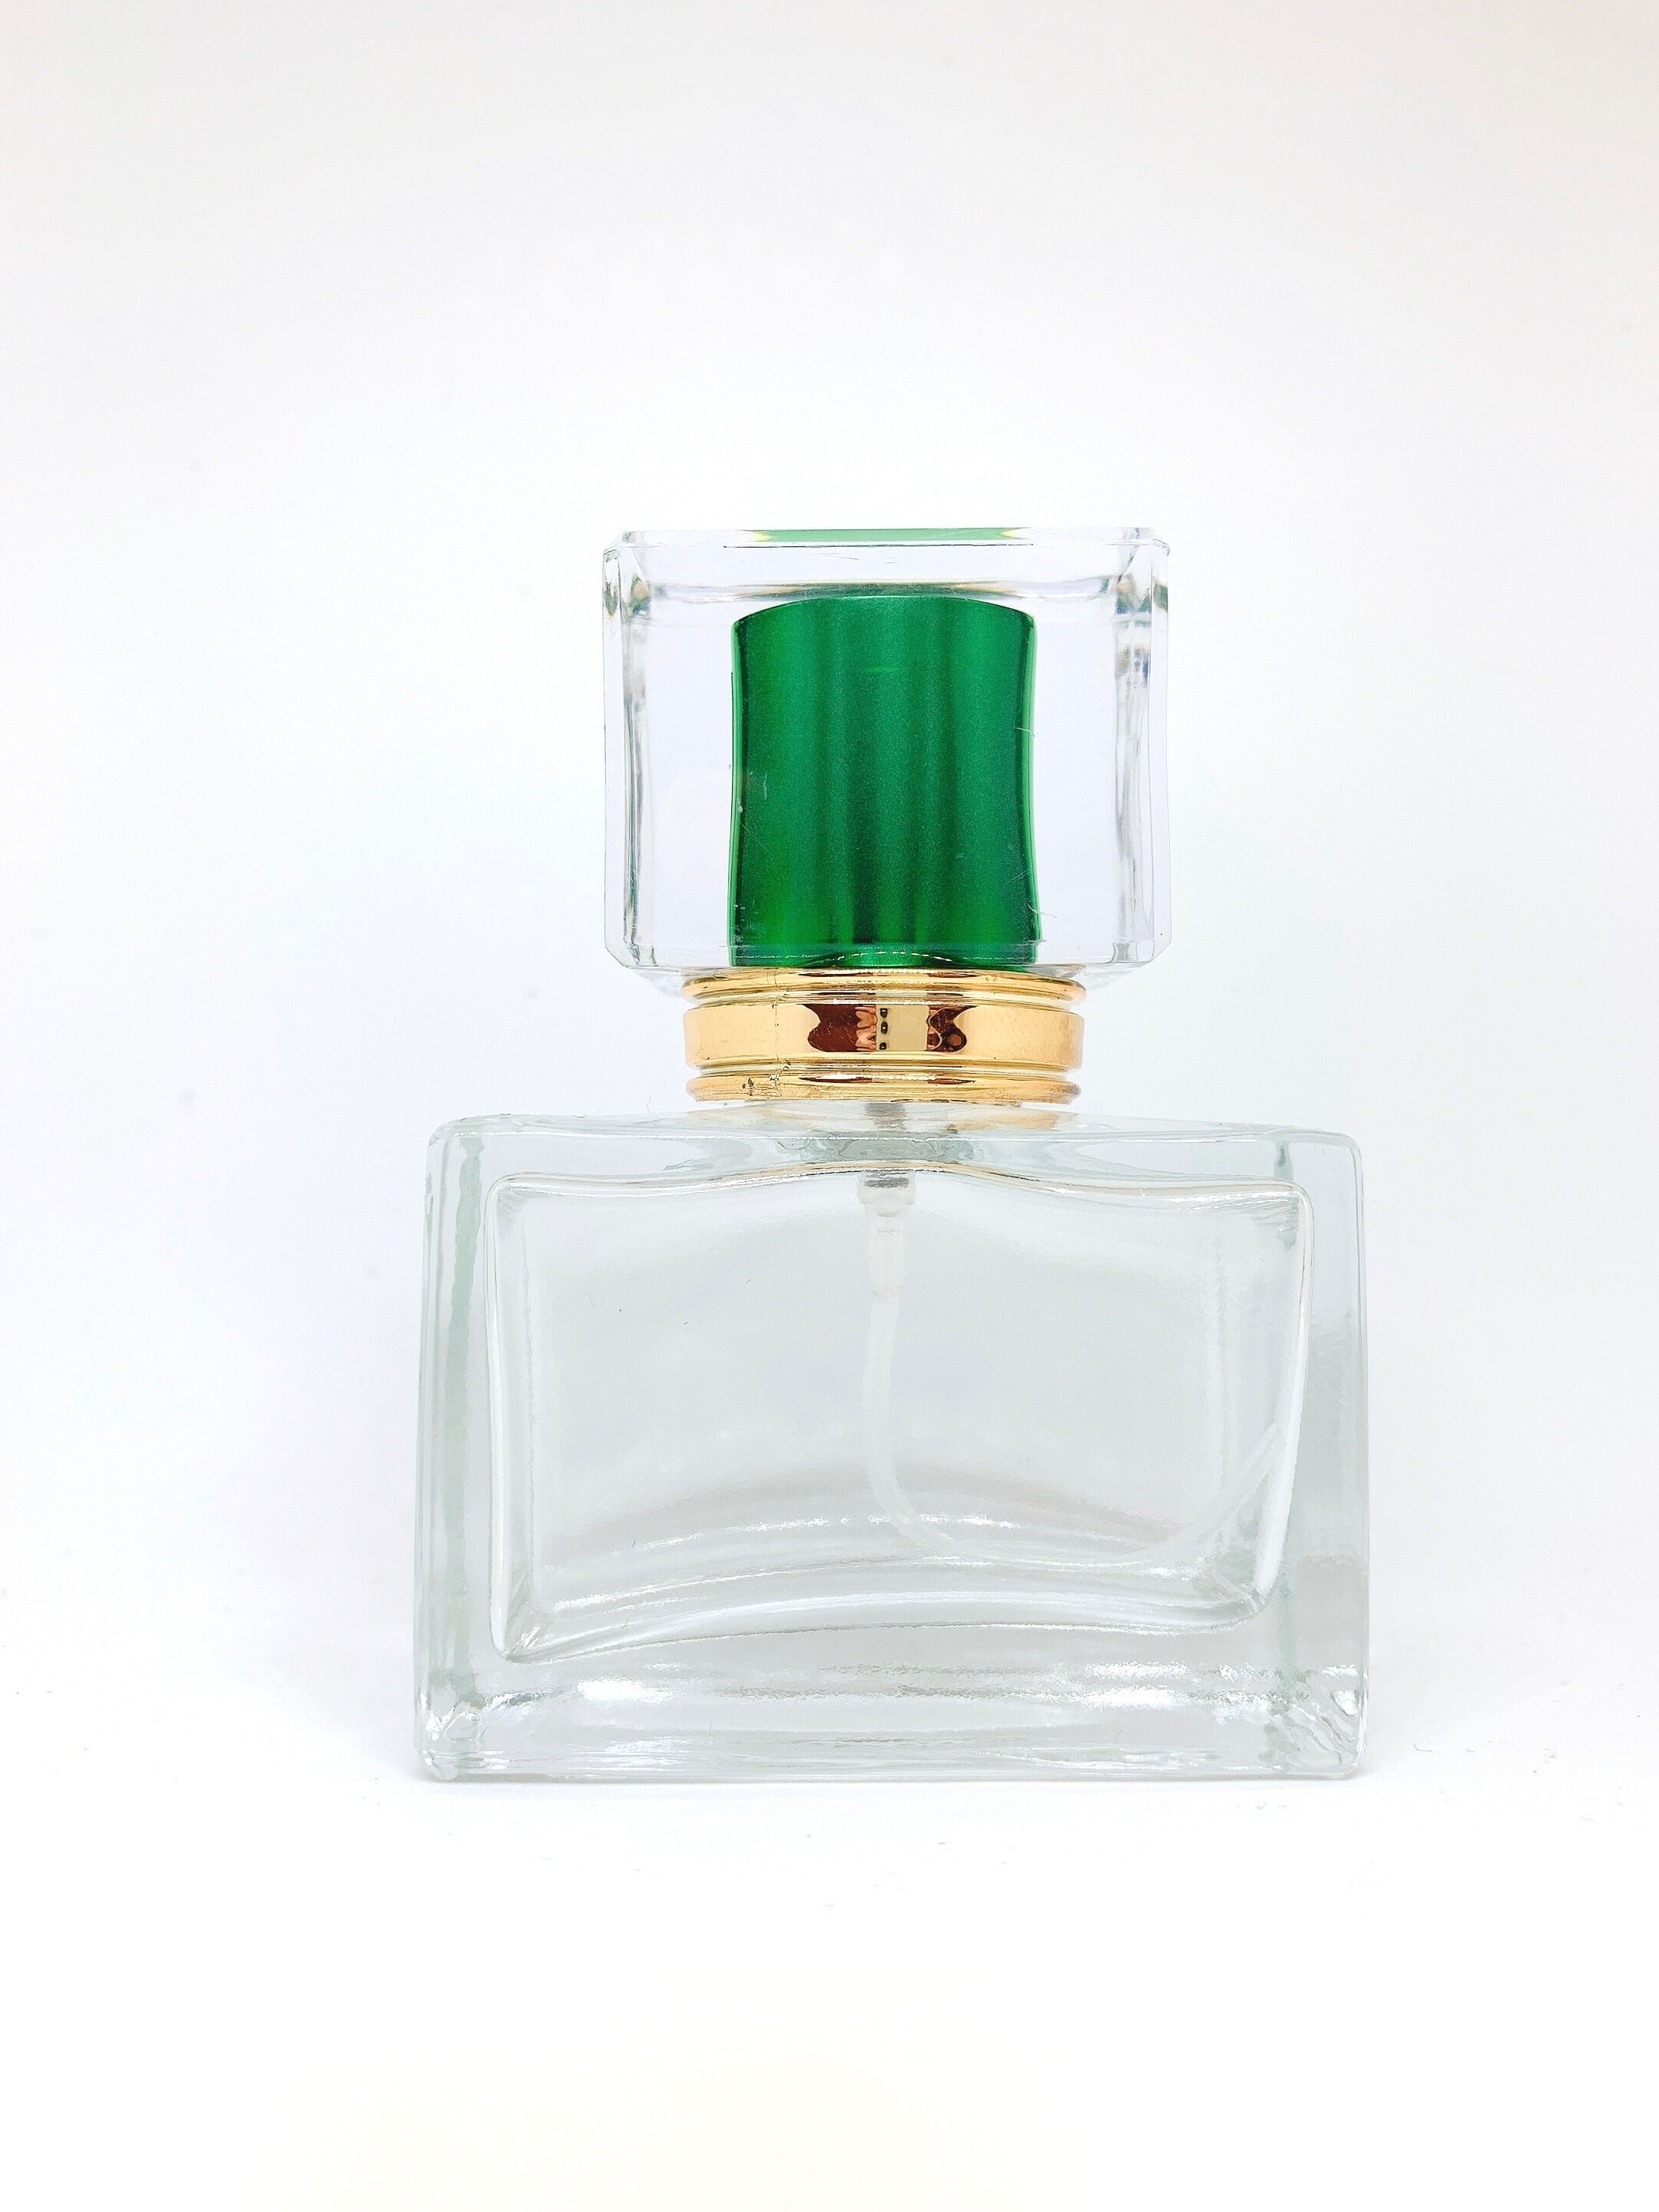 「その香水のせいだね」 ヘッド部分の落ち着いた深い緑が静かで美しい香水瓶です。 自作のアロマオイルなどを入れて、窓際に置きインテリアをお楽しみください。 その香りは、楽しかったあの頃を思い出させてくれることでしょう。 内容：スプレー容器 (グリーン) 1本 容量：30ml 素材：ガラス(容器) 横：5.9cm　縦：3.2cm　高：8.2cm（蓋含む） ※光の加減・パソコンの設定により、カラーが実際の商品と若干異なることがございます。